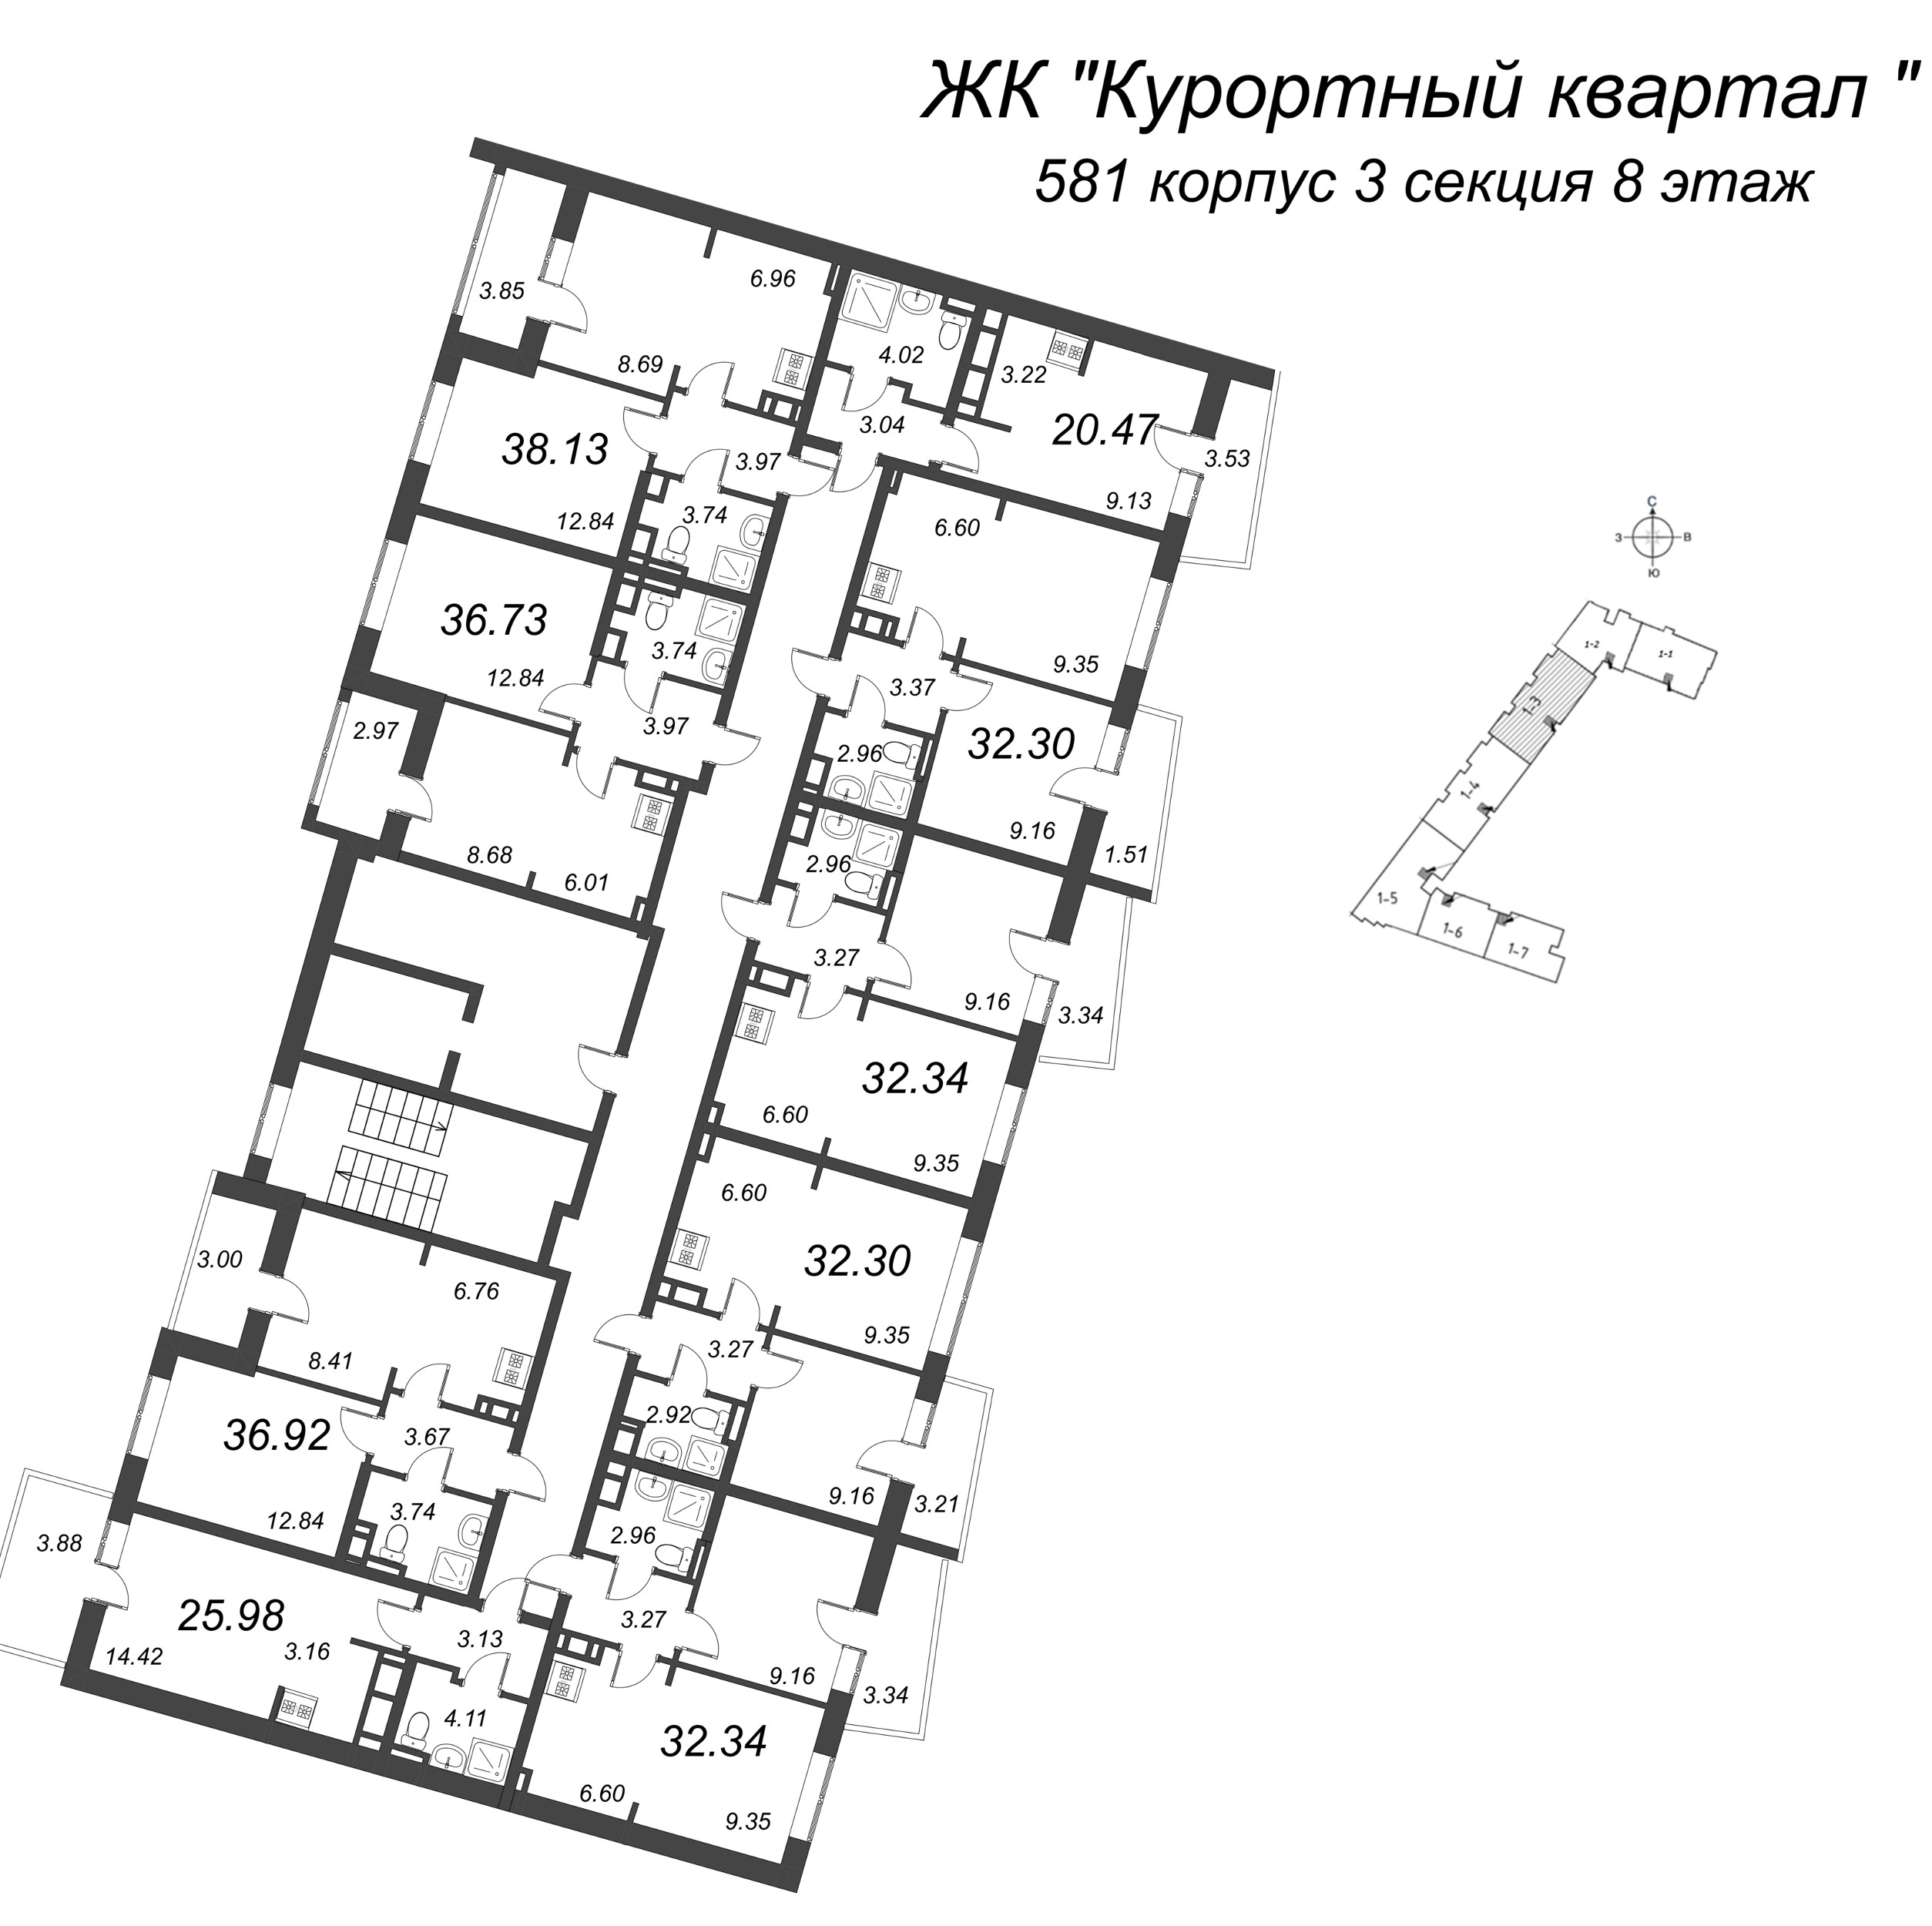 2-комнатная (Евро) квартира, 32.34 м² в ЖК "Курортный Квартал" - планировка этажа